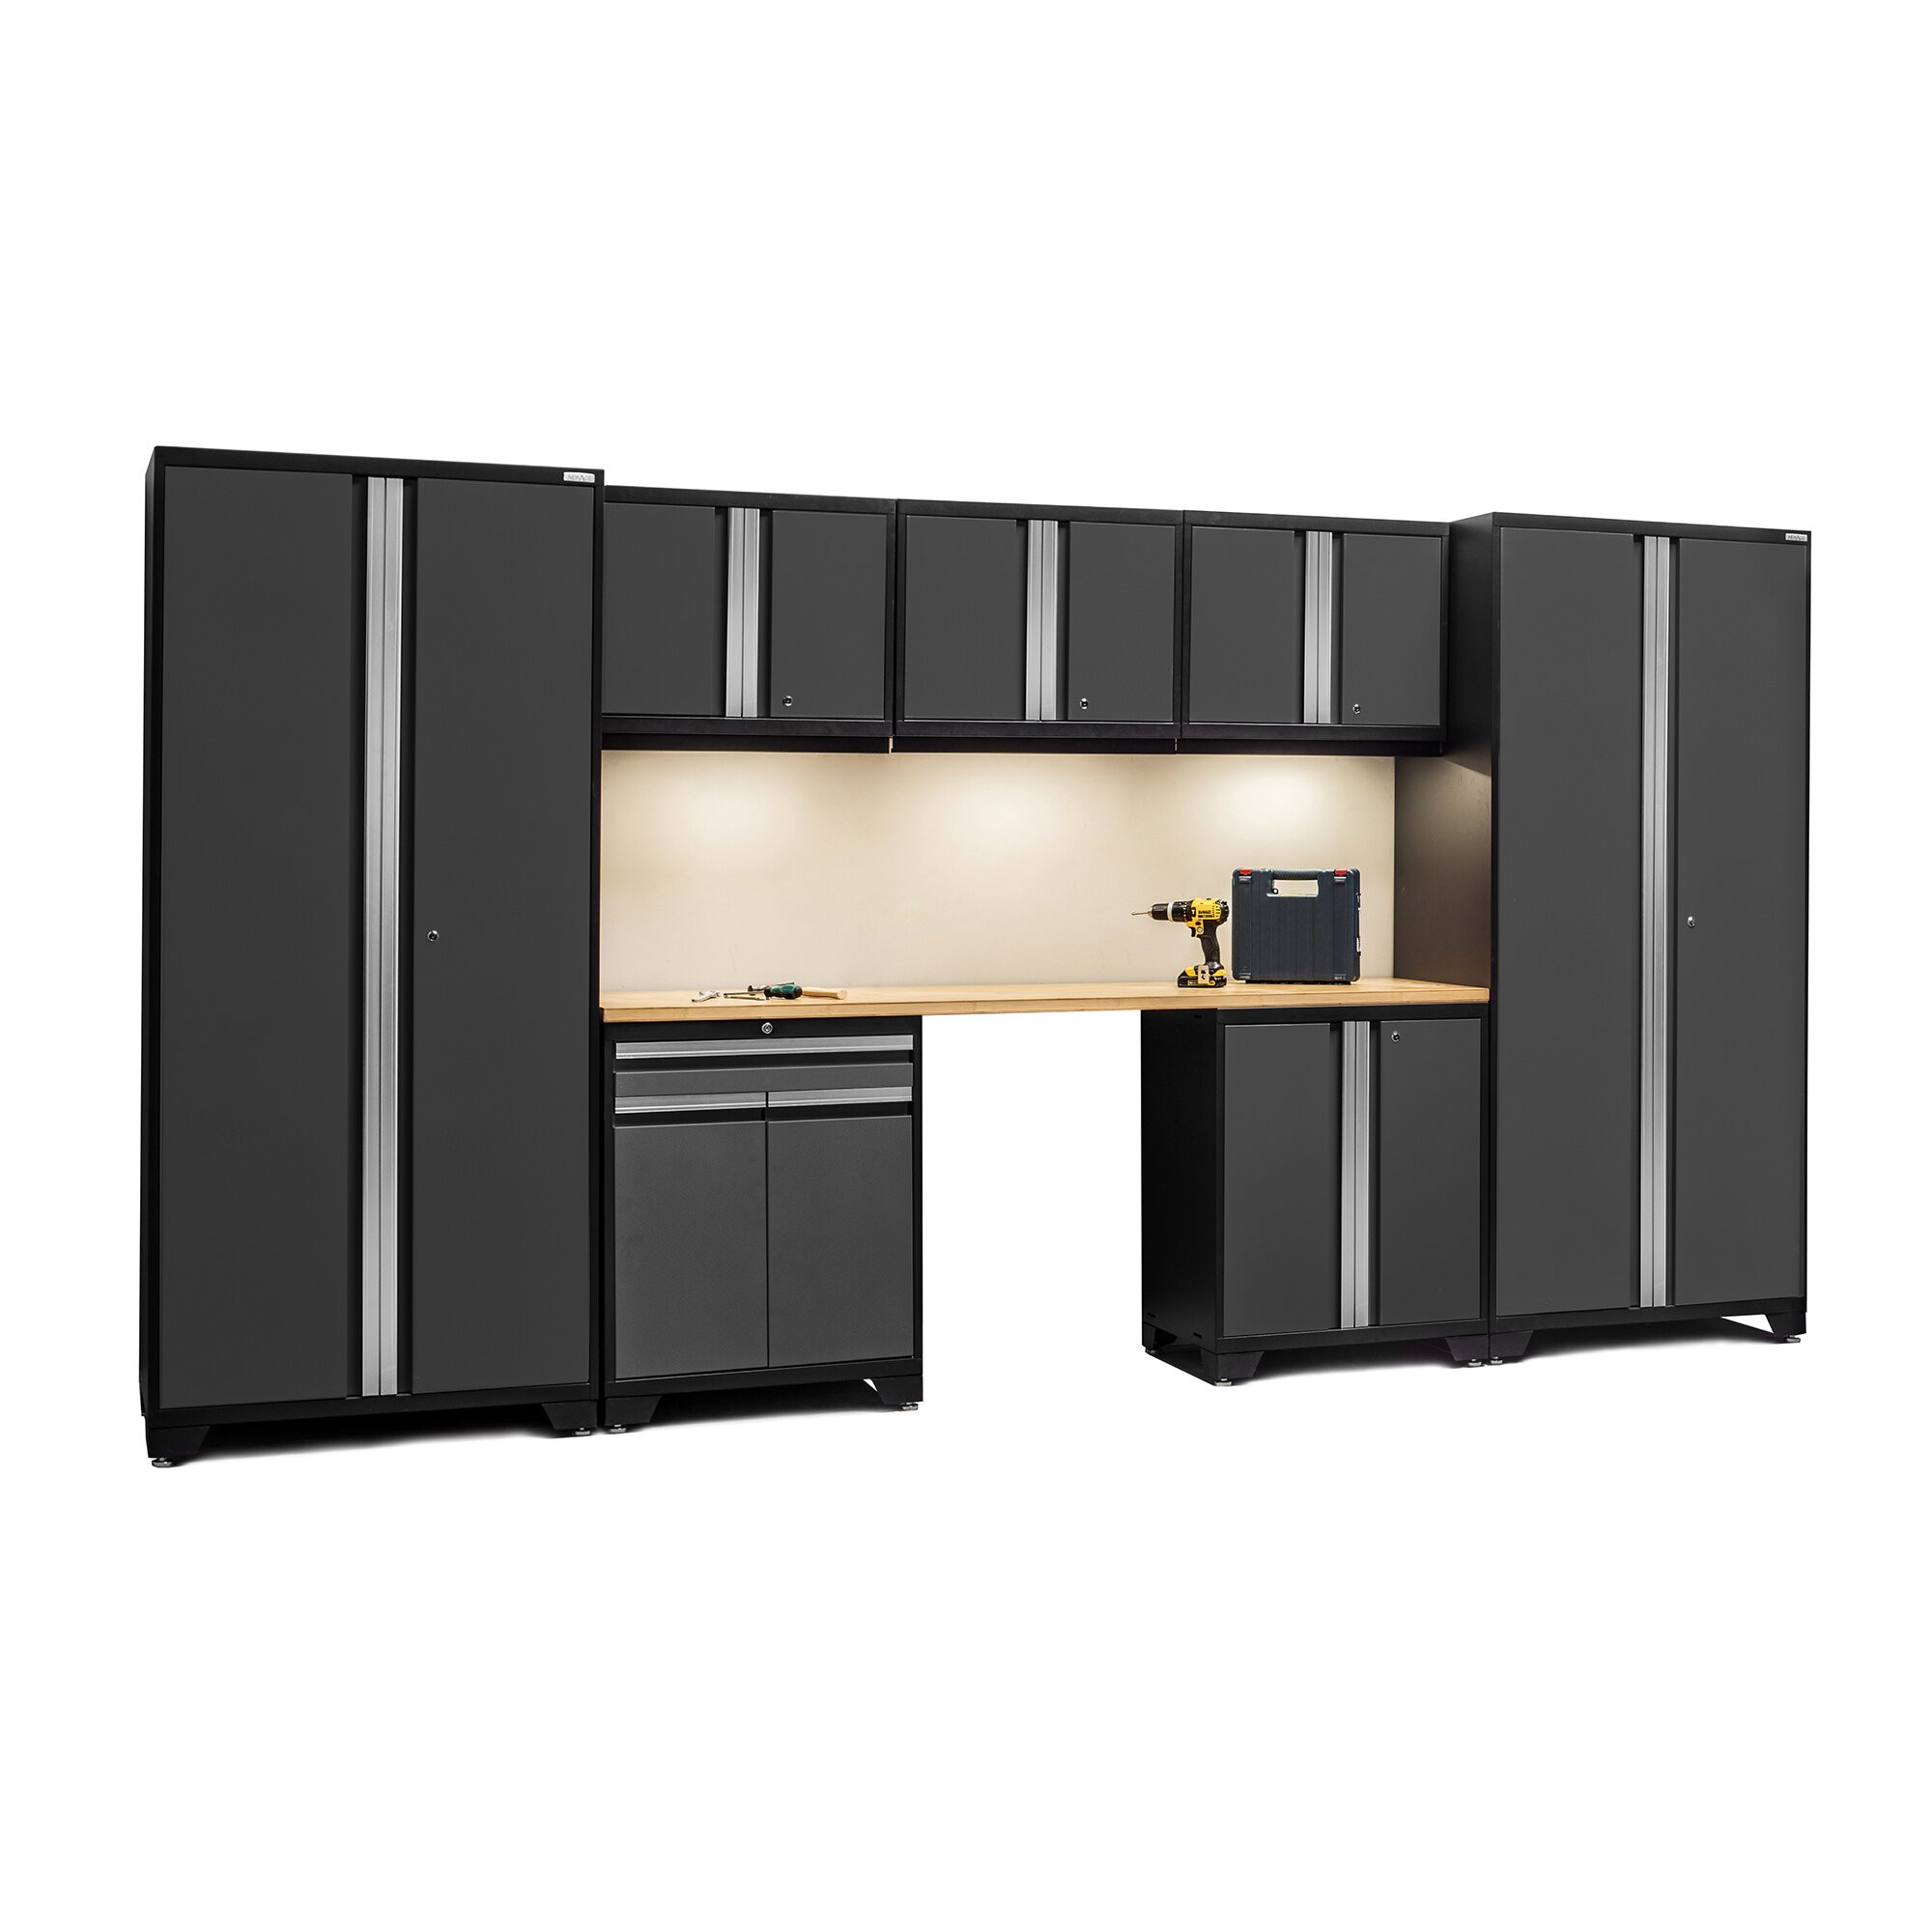 Garage Organizer Cabinet
 NewAge Products Pro 3 0 Series 8 Piece Garage Storage